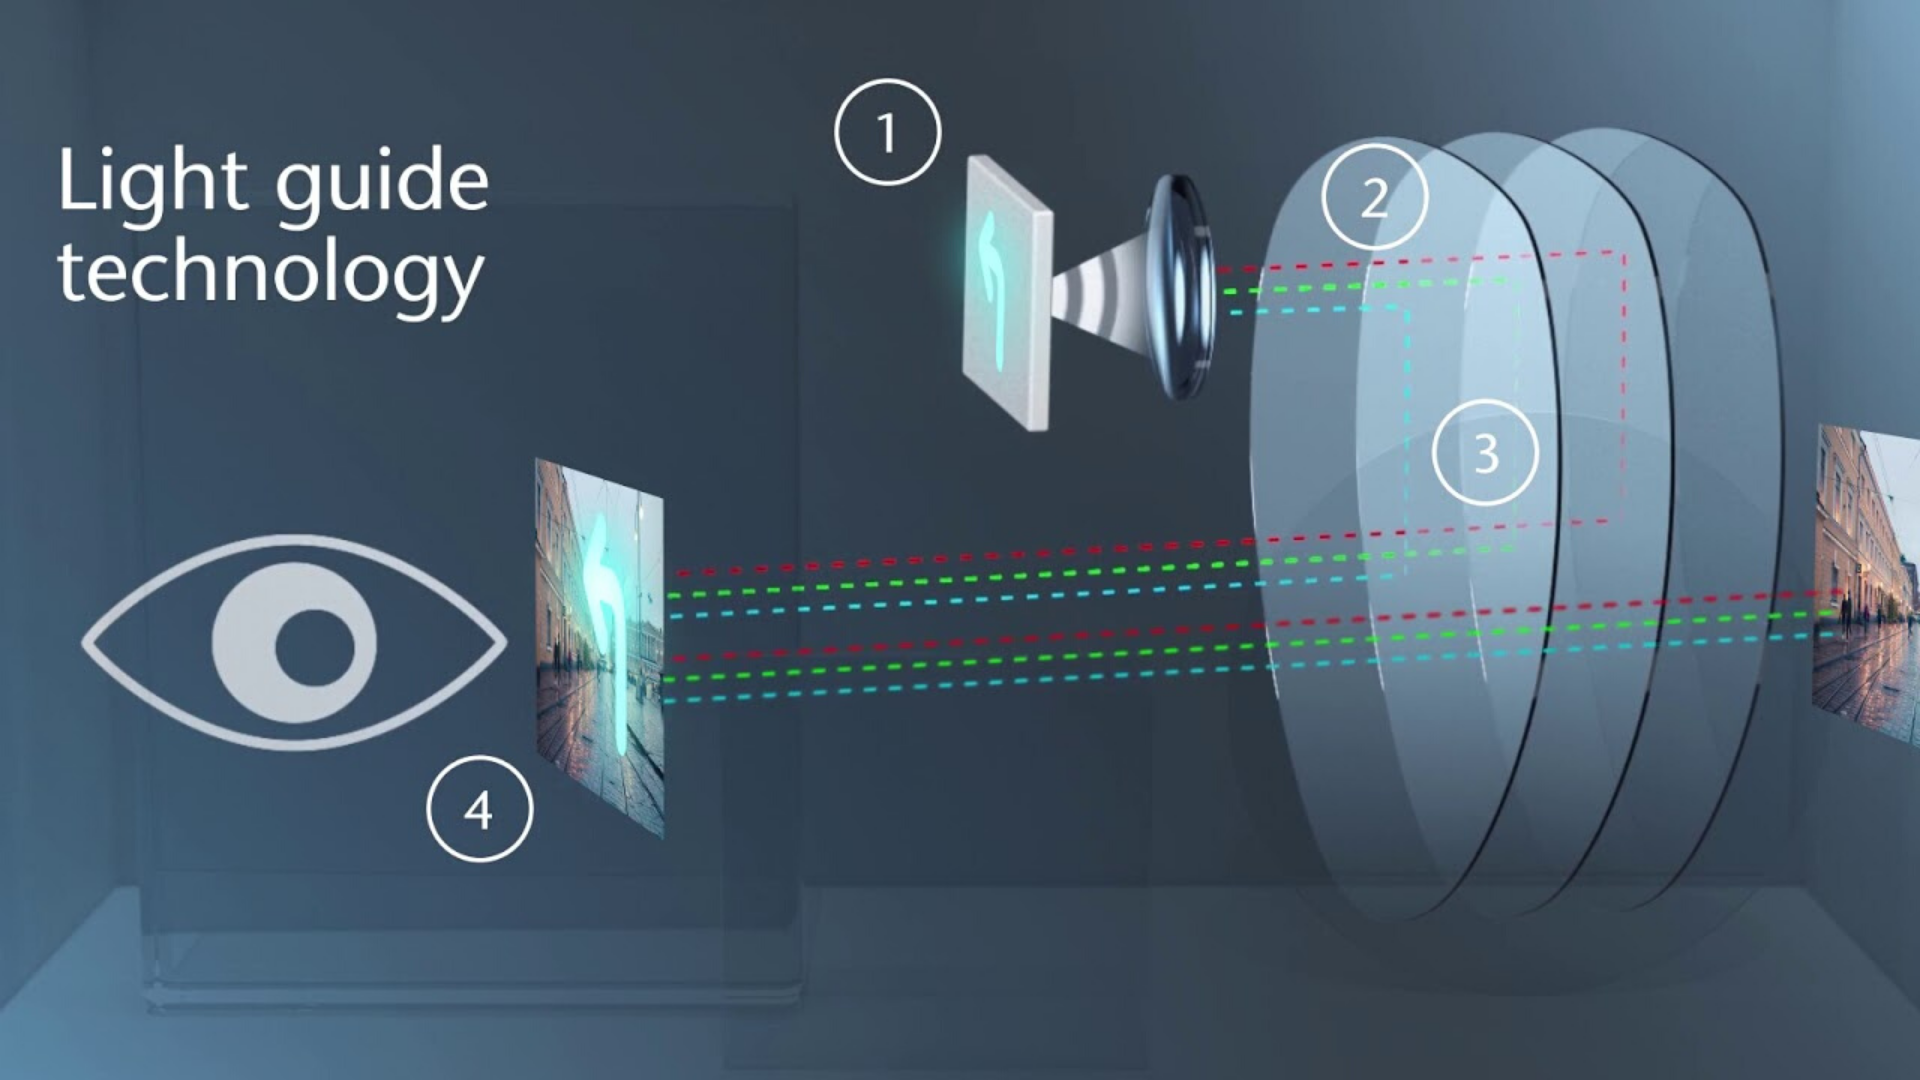 点击以了解关于肖特 RealView® 玻璃晶圆的光导技术